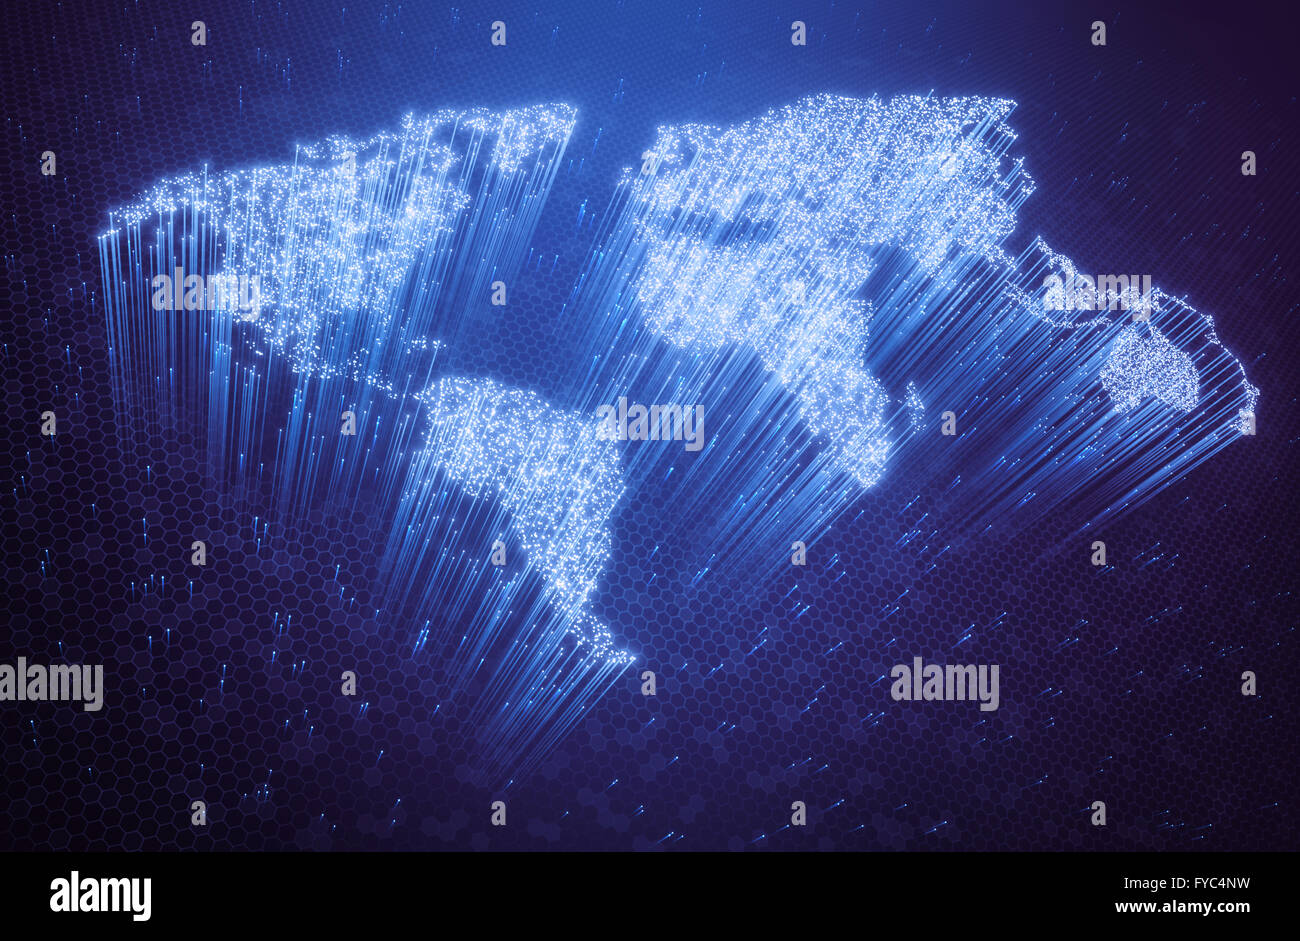 Lichtleitfasern beleuchteten in Form der Weltkarte. 3D Bild-Konzept der globalen Kommunikation durch optische Faser. Stockfoto